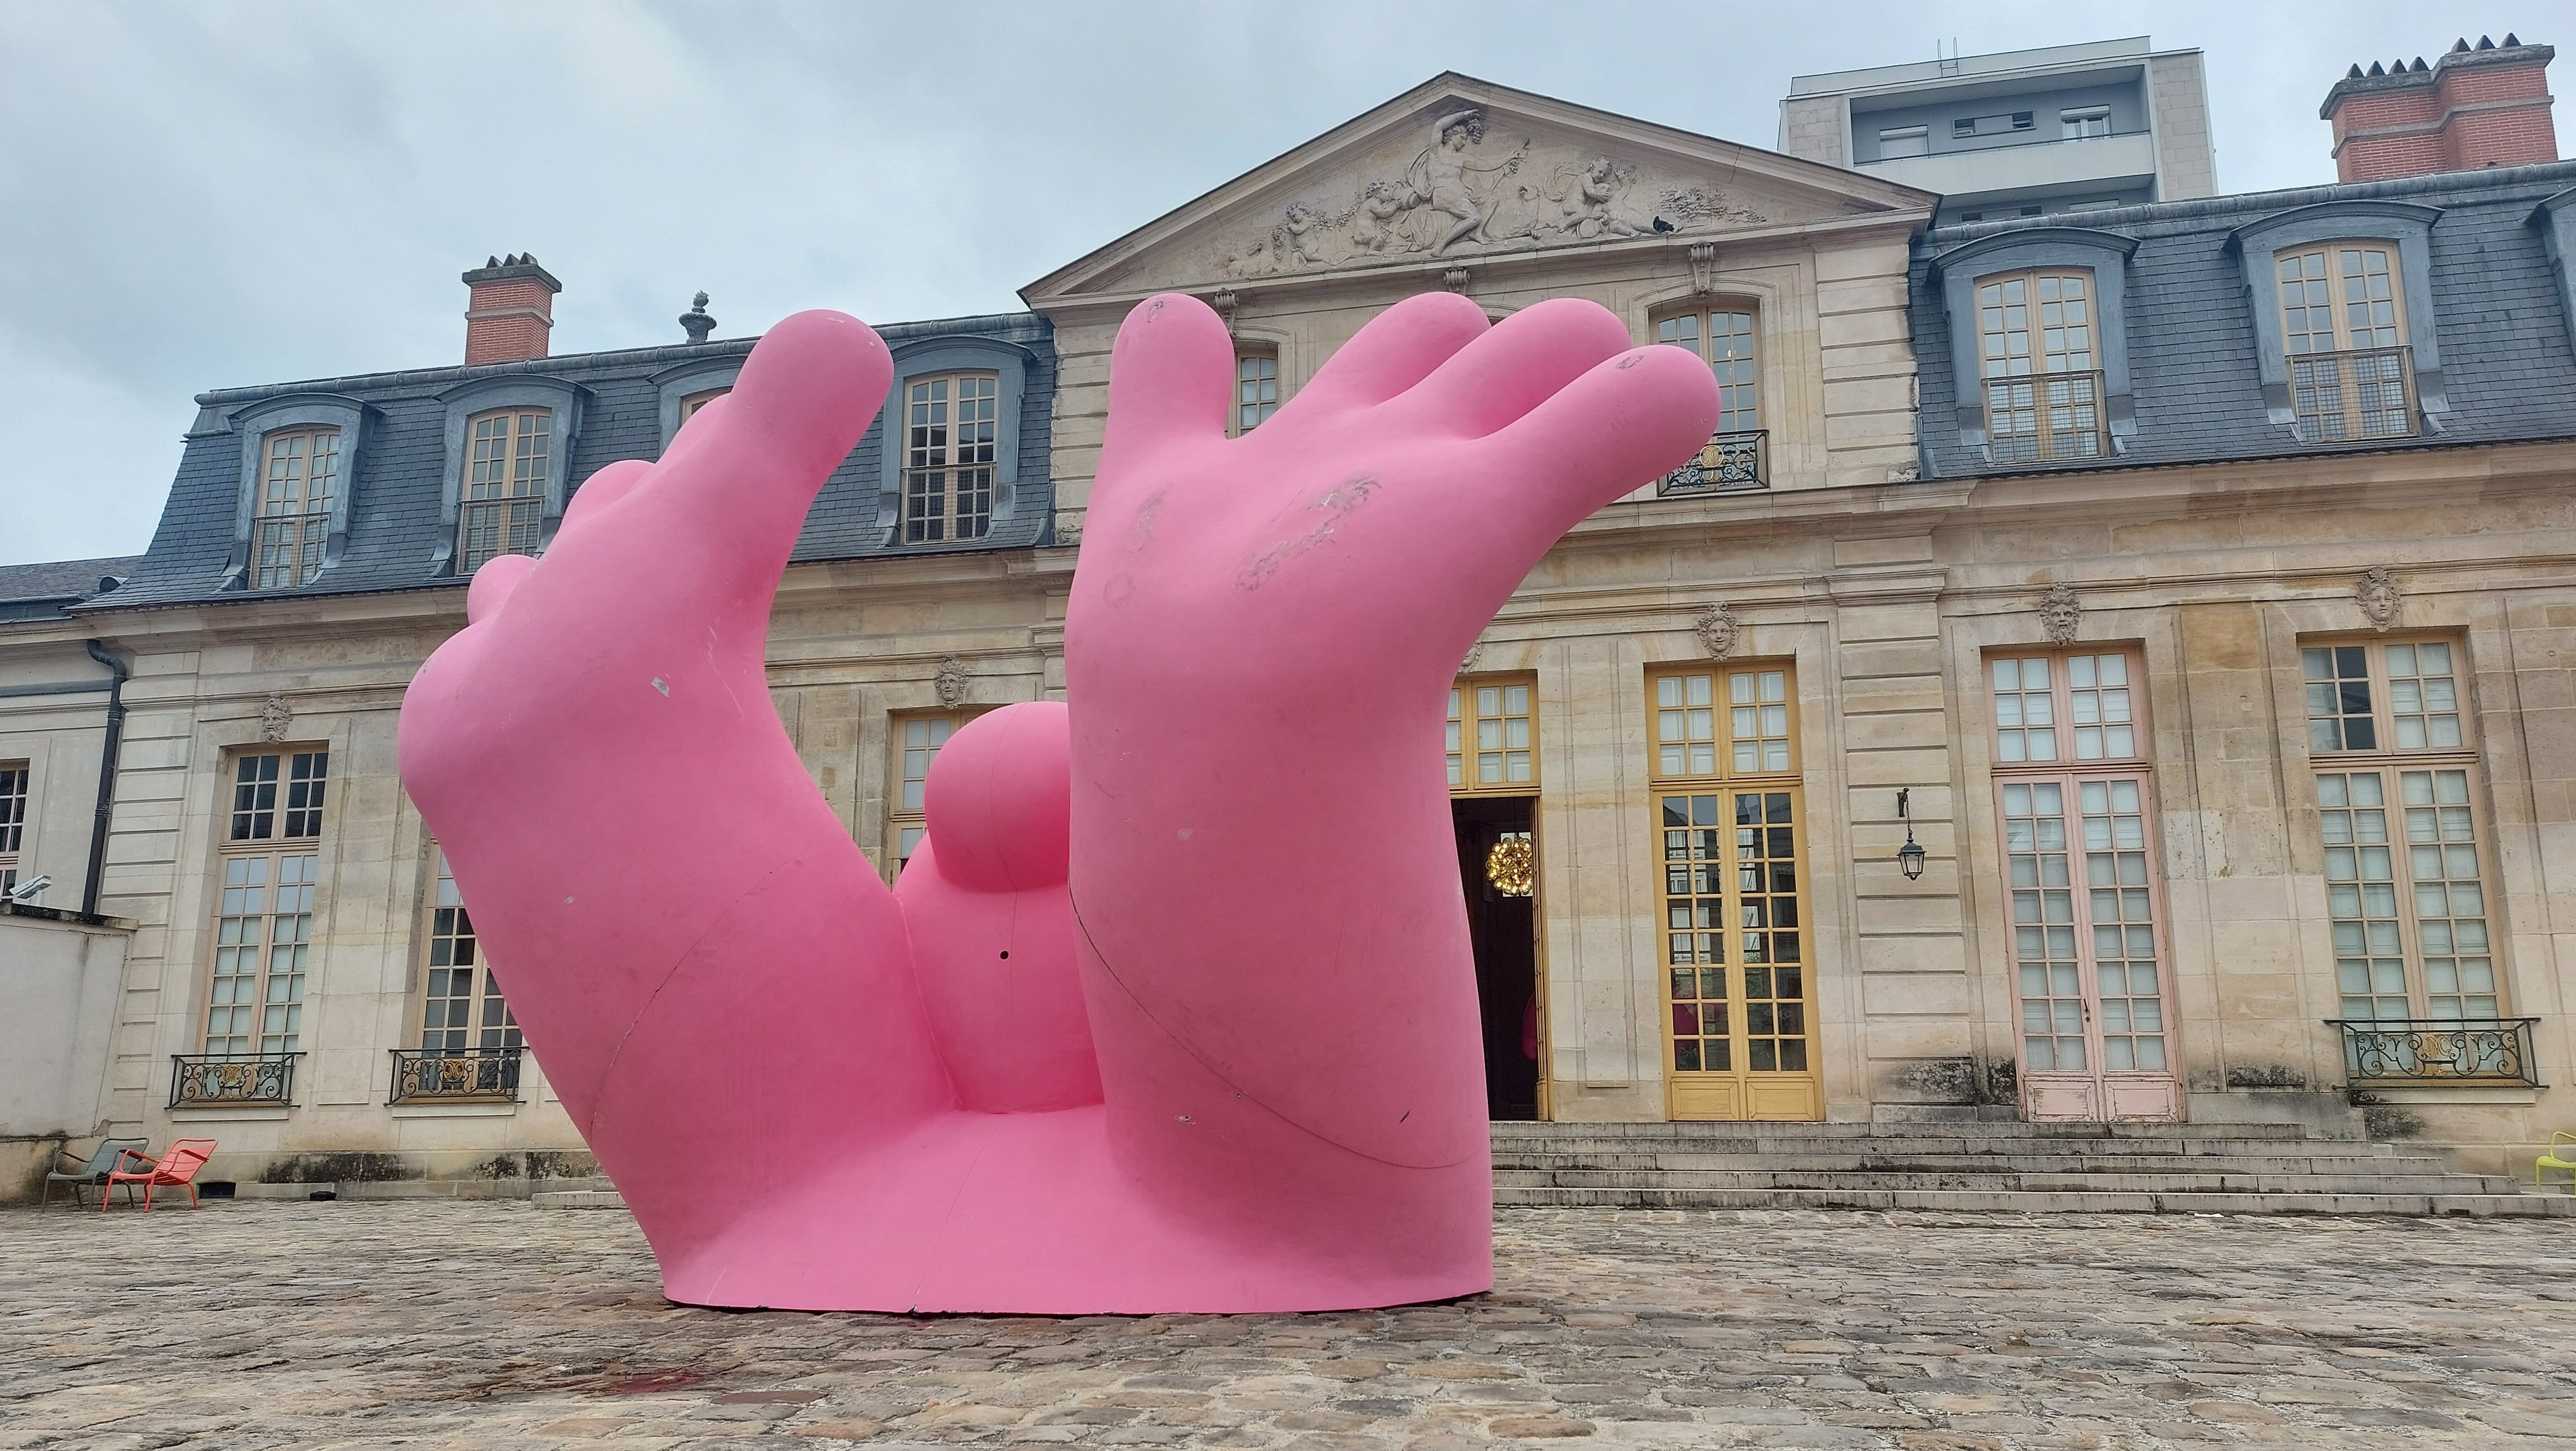 Clichy (Hauts-de-Seine), le 22 juin. L'agence RentingART, installée dans la ville, propose l'exposition Mignonisme 2, avec un circuit dans l'espace public, de neuf bonhommes roses réalisés par Philippe Katerine. LP/Anne-Sophie Damecour